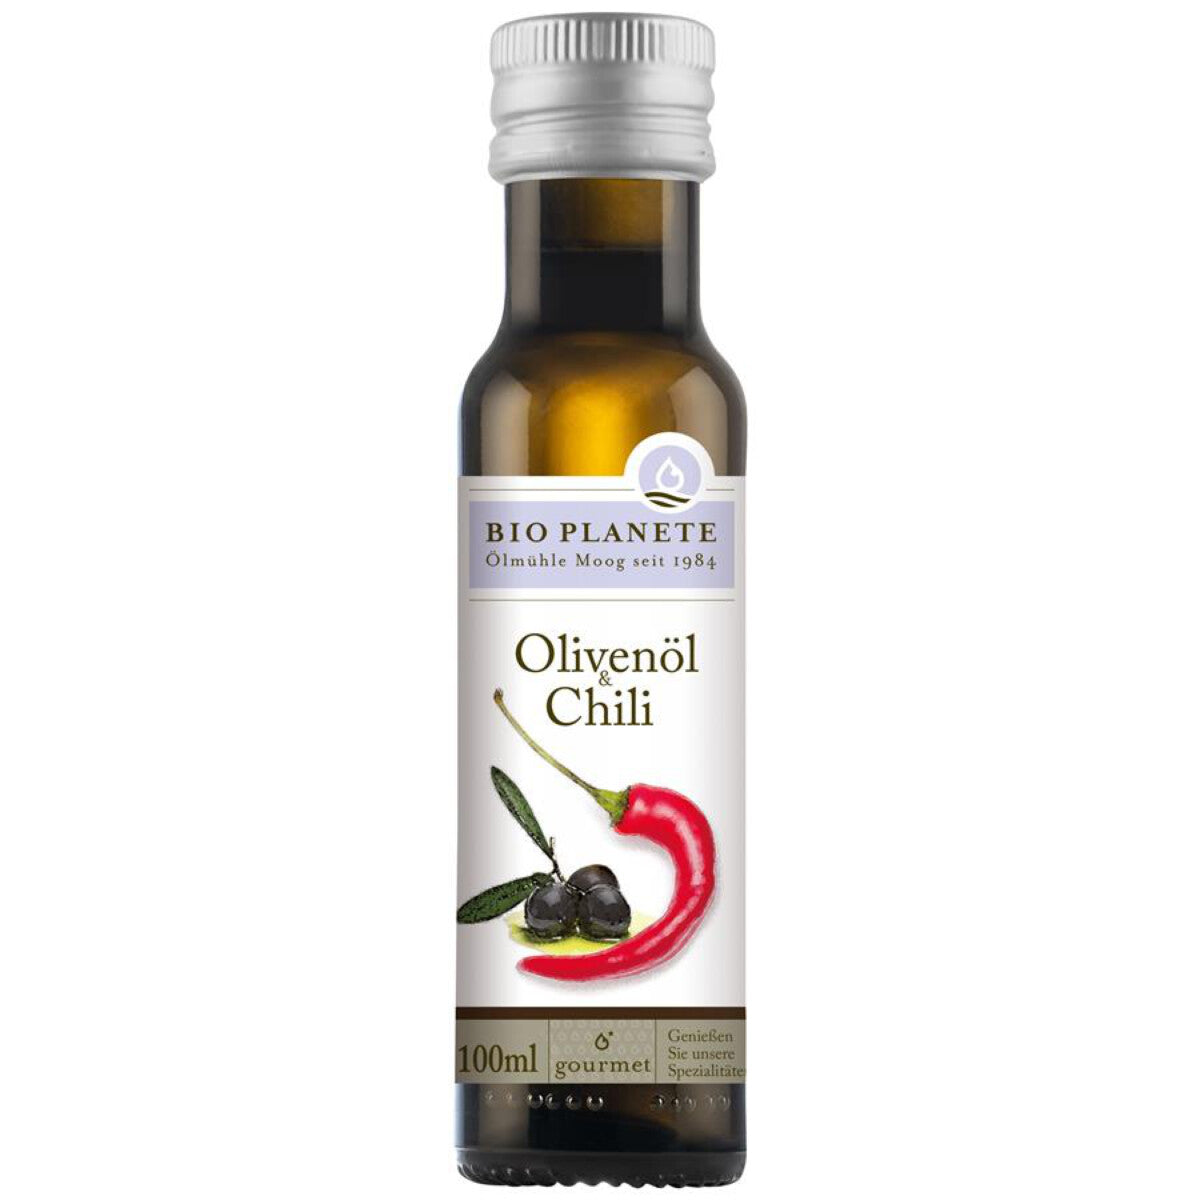 BIO PLANETE Olivenöl & Chili - 0,1 l